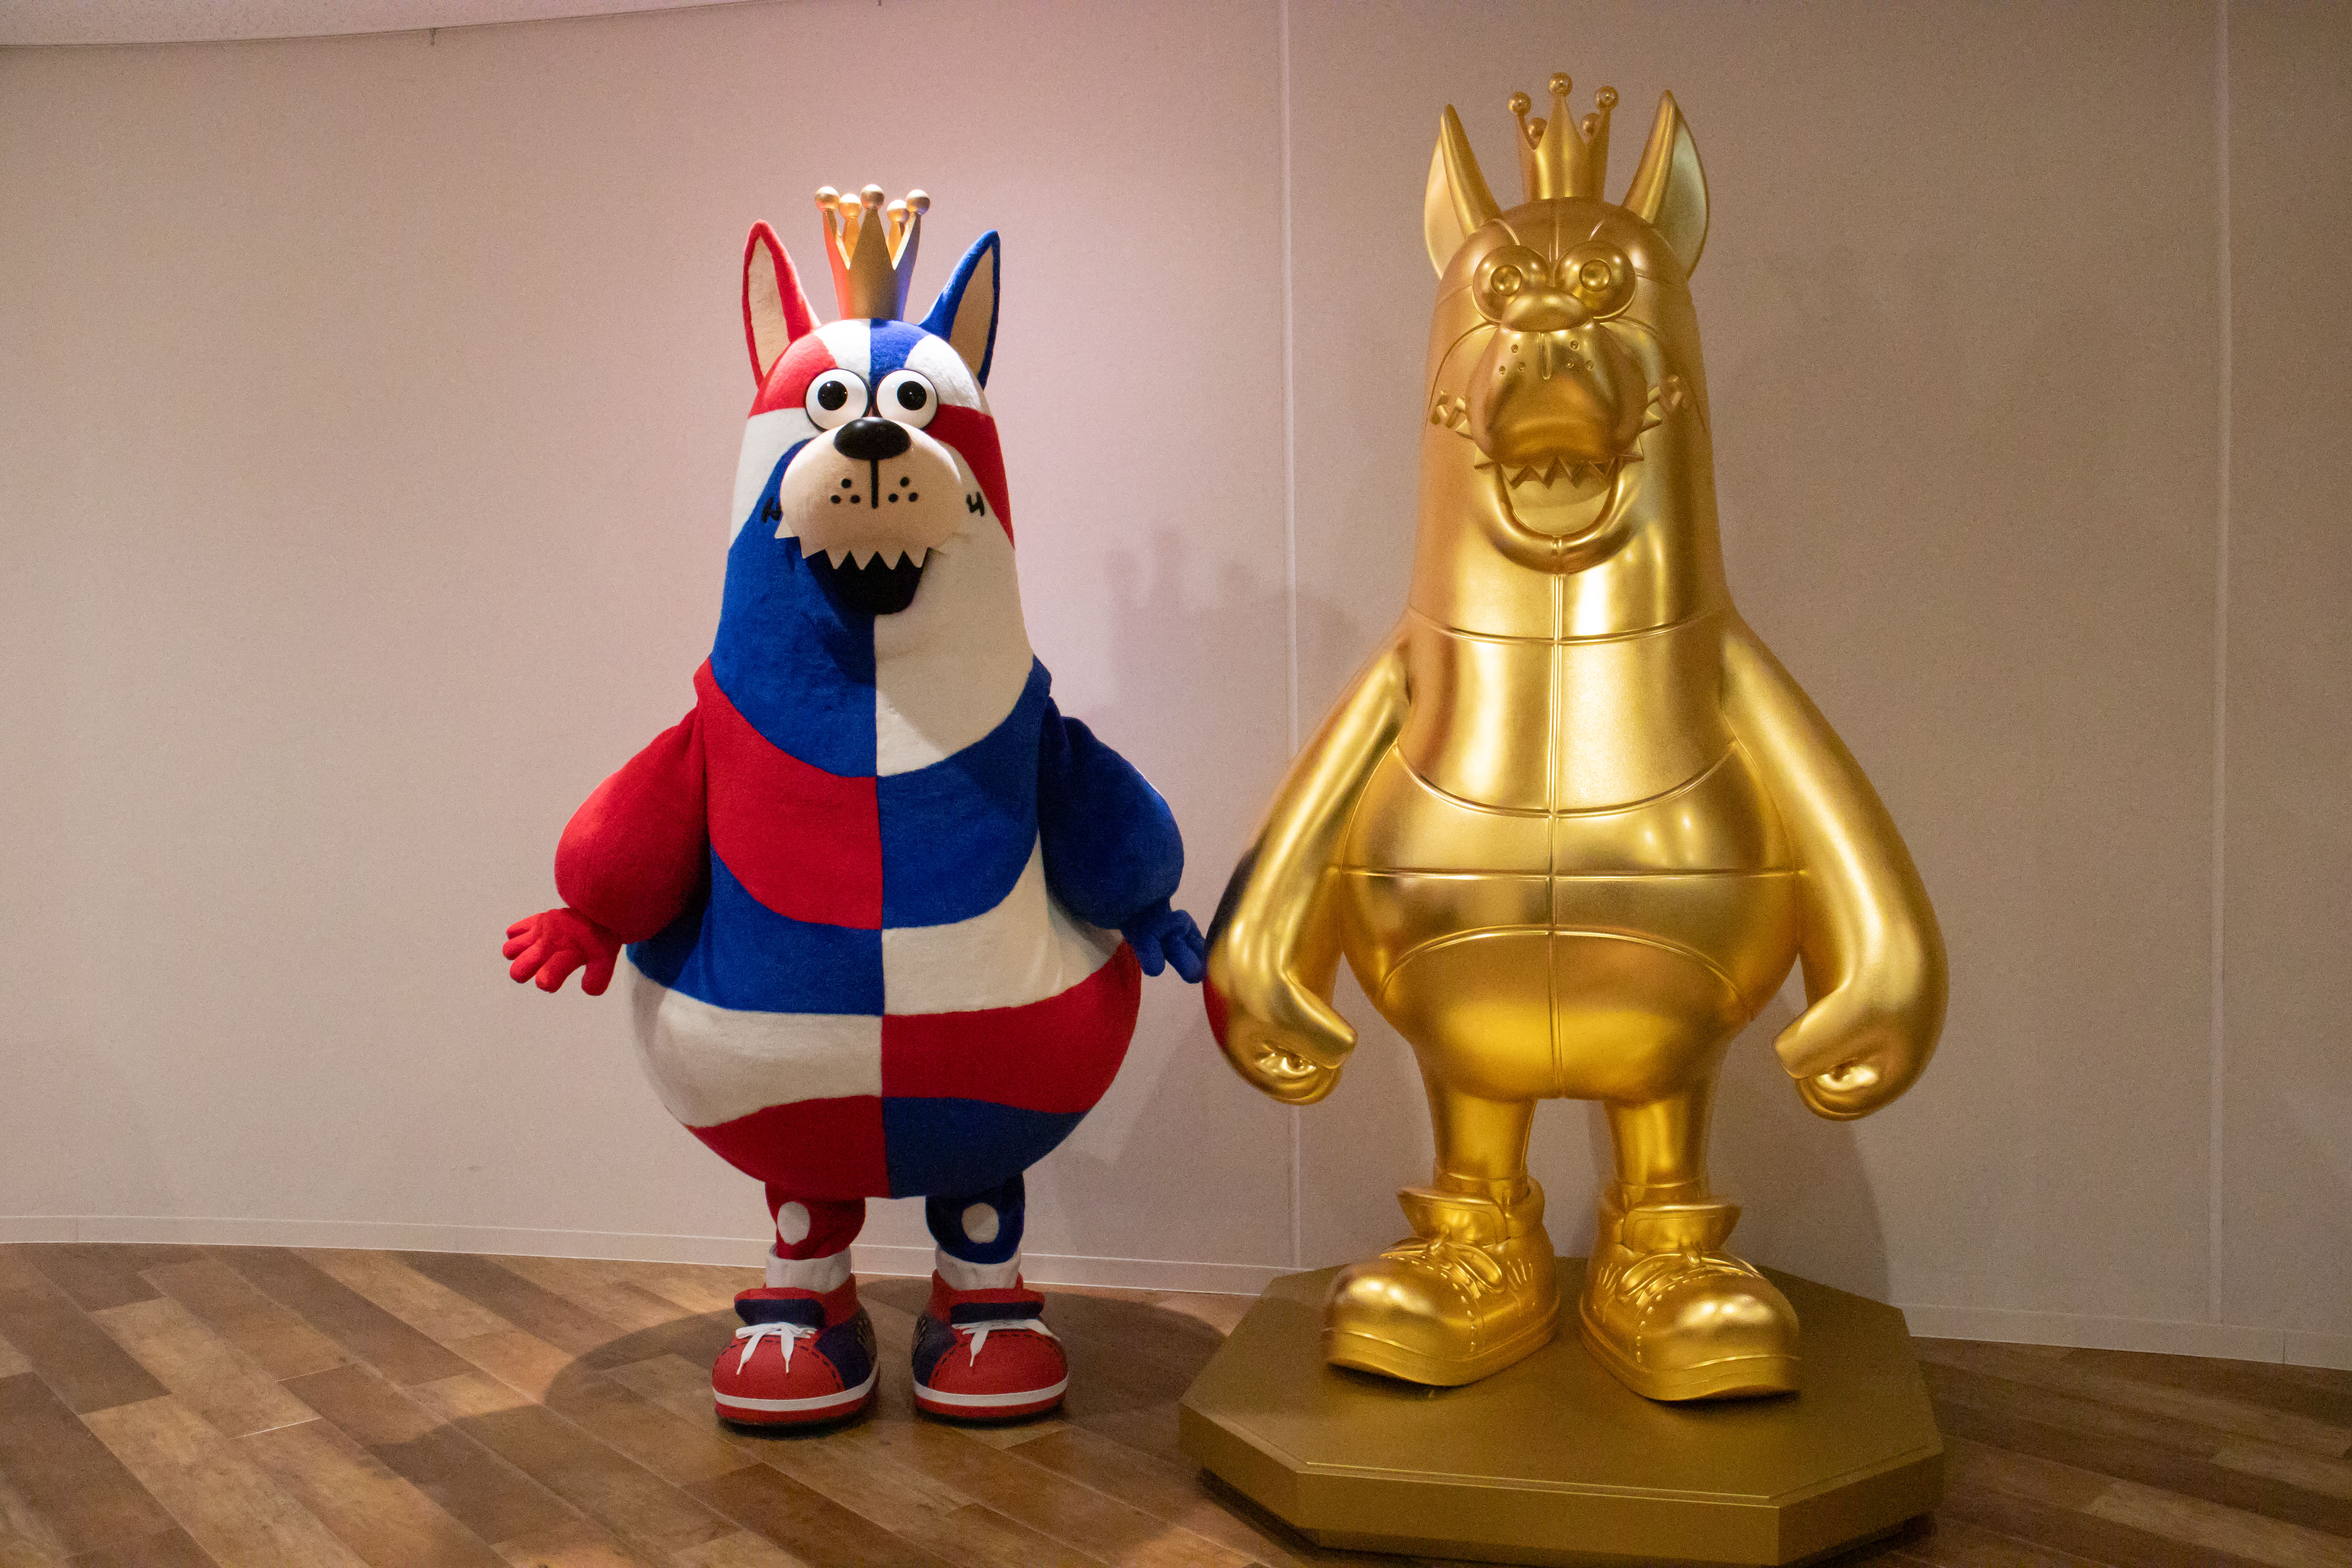 SGC×キングス ゴーディー等身大金箔像と純金ゴーディーを沖縄アリーナにて展示します